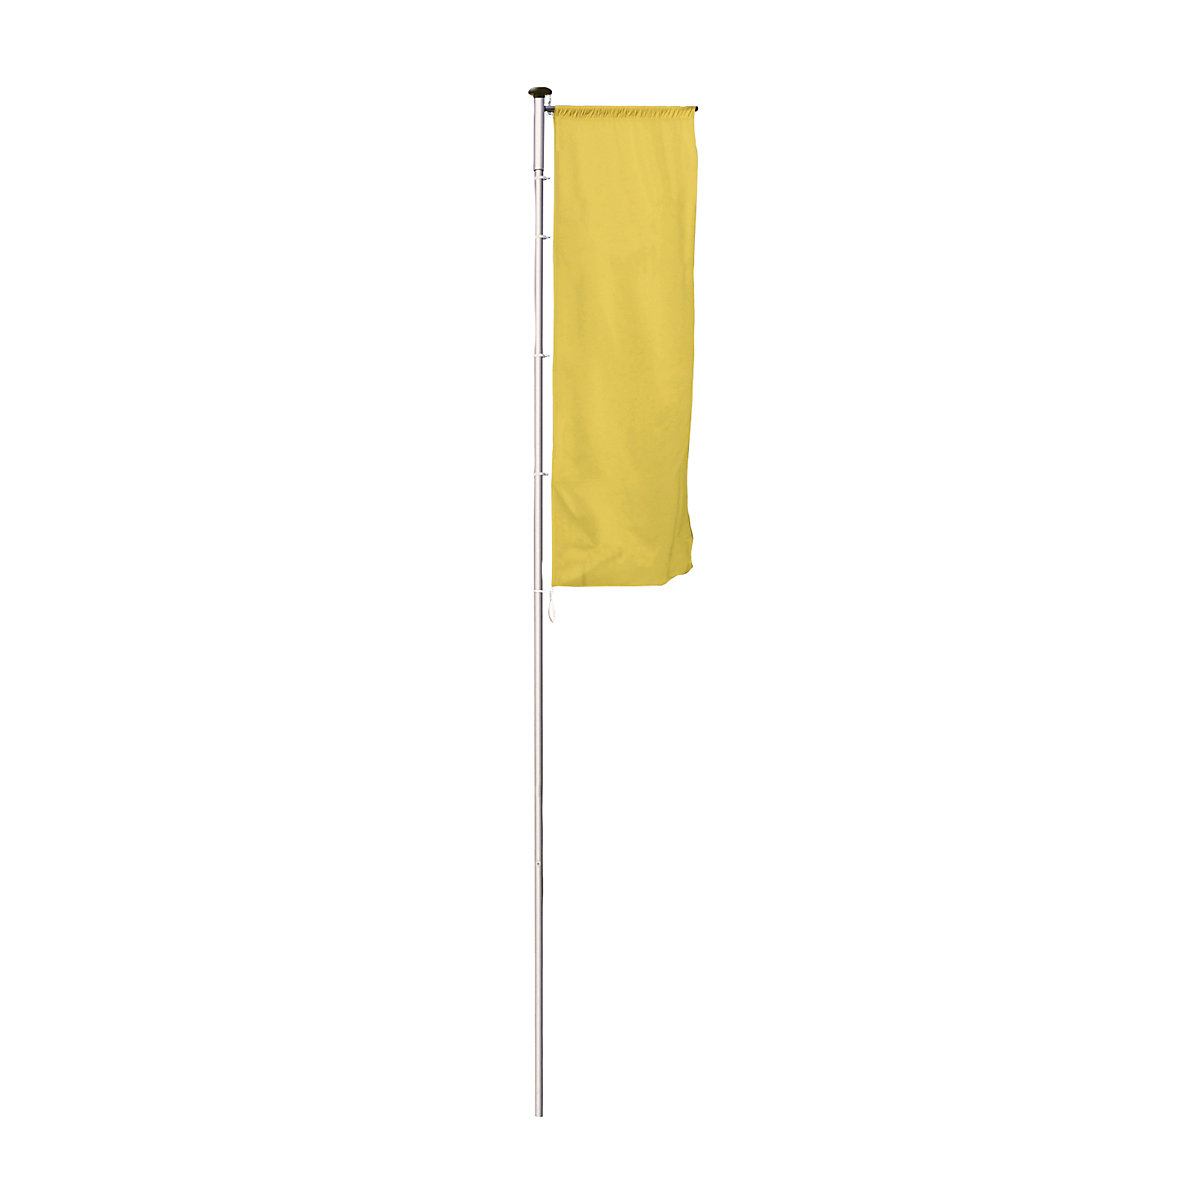 Mastro de bandeira em alumínio PIRAT – Mannus, com braço, altura acima do solo 6 m, Ø 75 mm